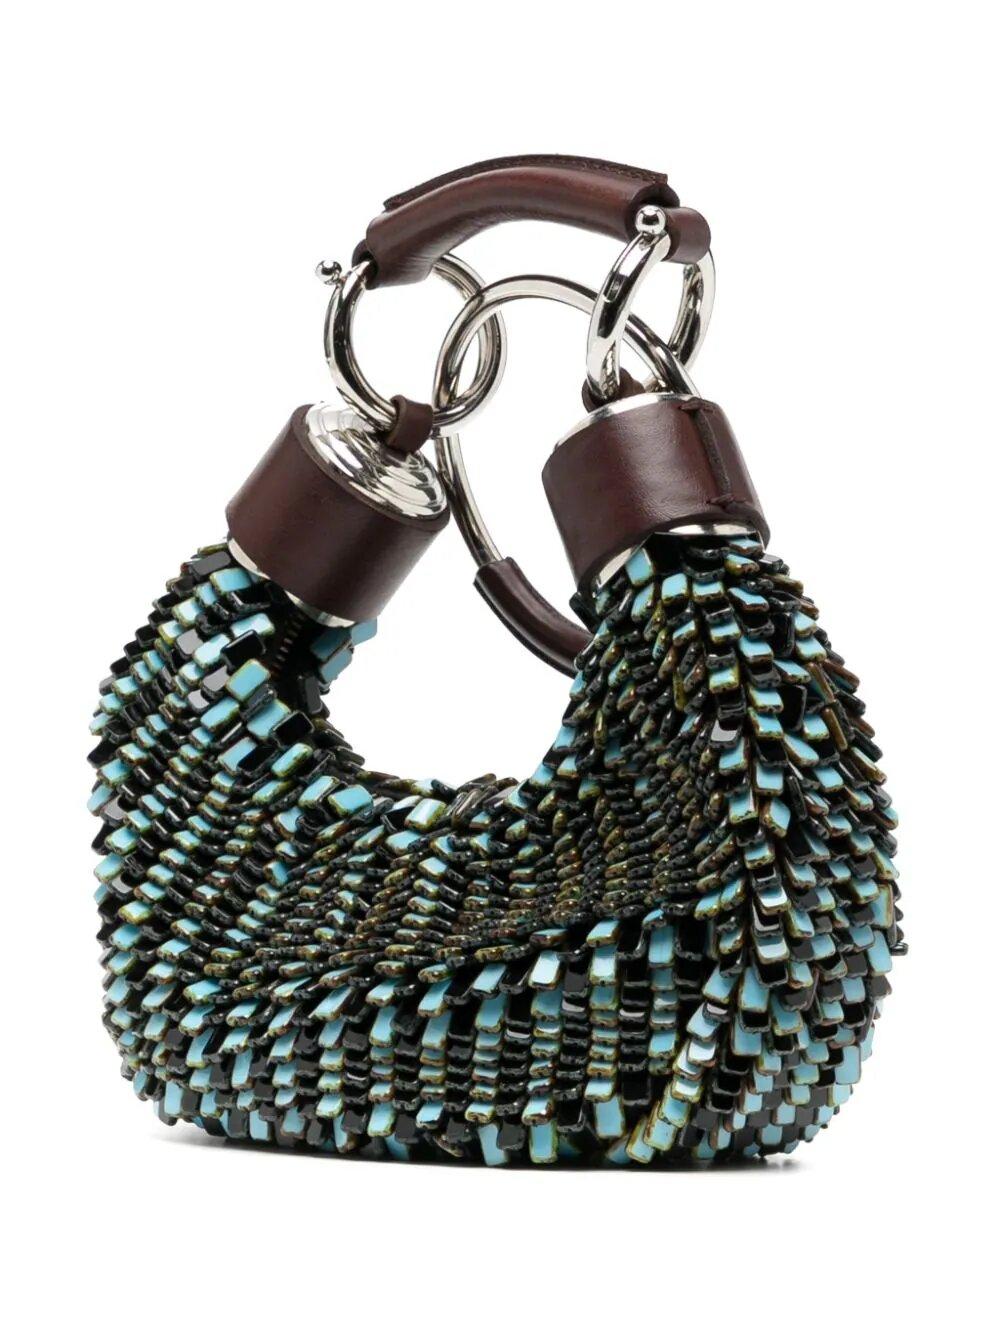 Die Chloe Half Moon Bracelet Bag verbindet mit ihrem einzigartigen Glasperlendesign Mode und Funktion. Die Zusammensetzung aus 20% Plexiglas und 80% Leder sorgt für Langlebigkeit und Stil. Mit diesem eleganten und praktischen Accessoire werten Sie